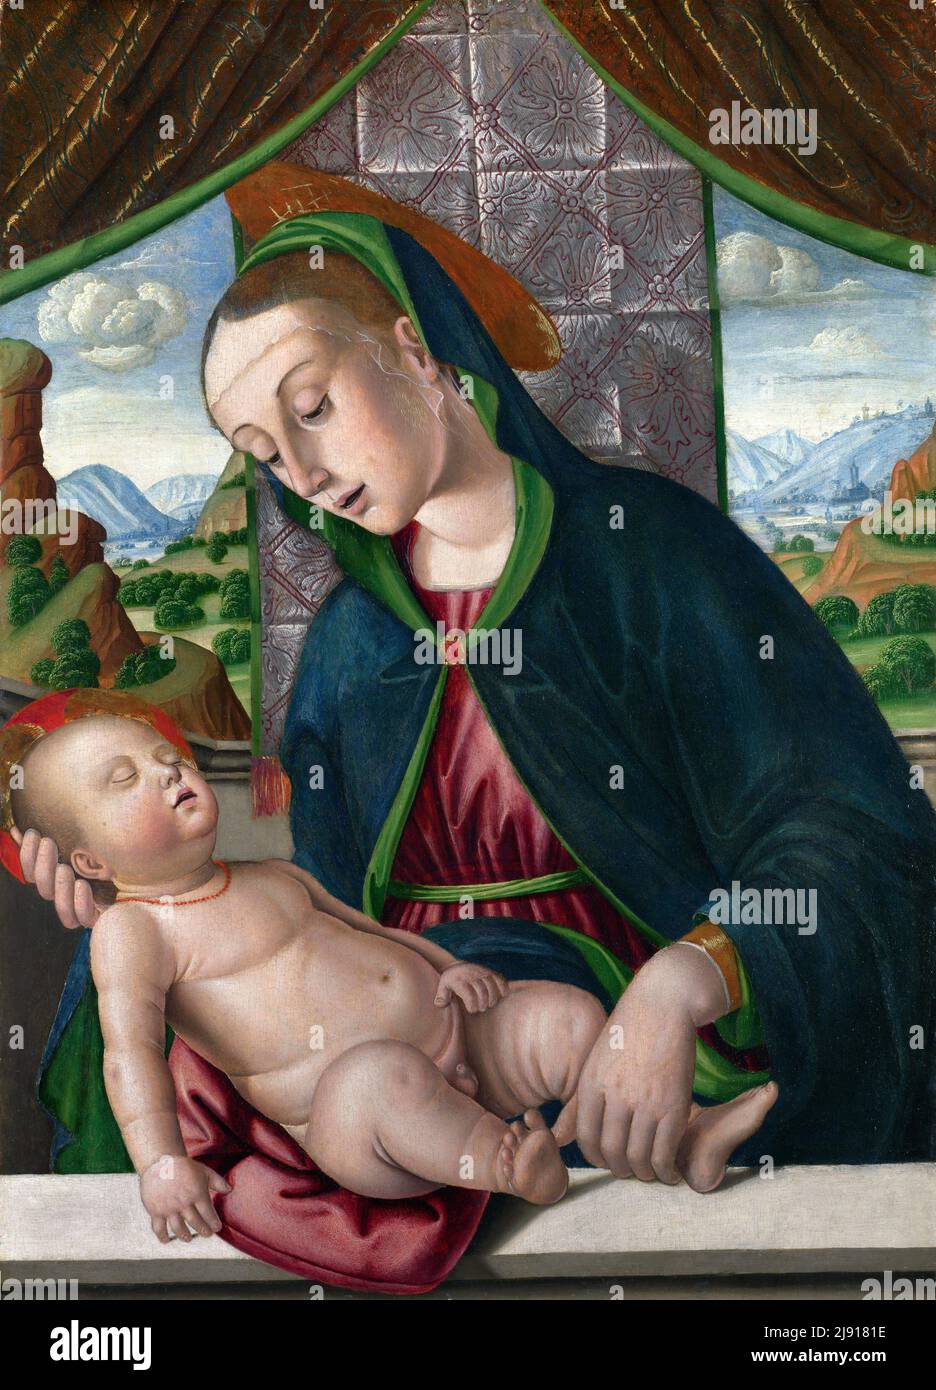 La Vierge à l'enfant par l'artiste italien Giovanni Santi (c. 1435-1494), oeuf et huile sur bois, c. 1488 Banque D'Images